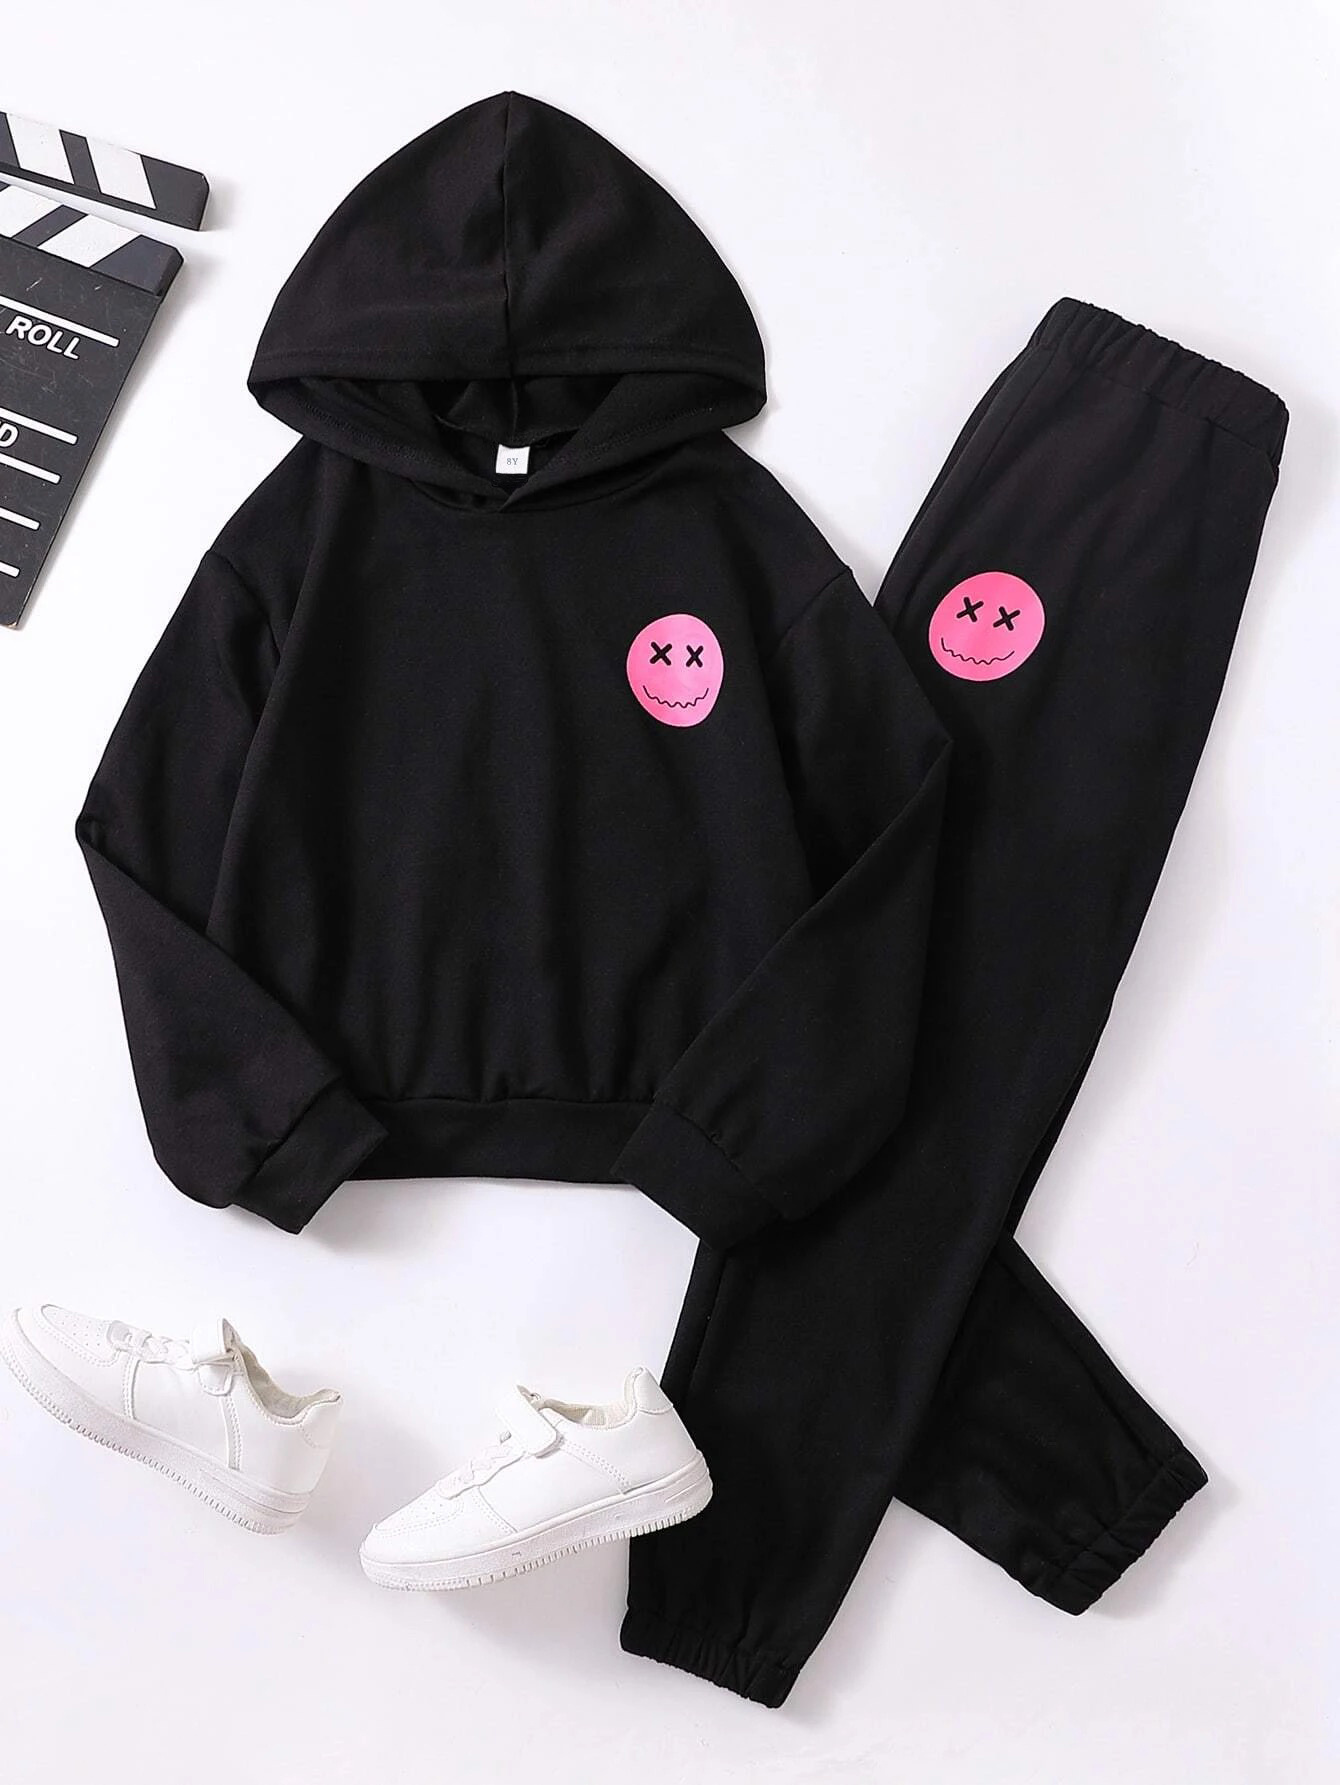 Series 3 Sweatpants - Black  Lazy cute outfits, Black hoodie